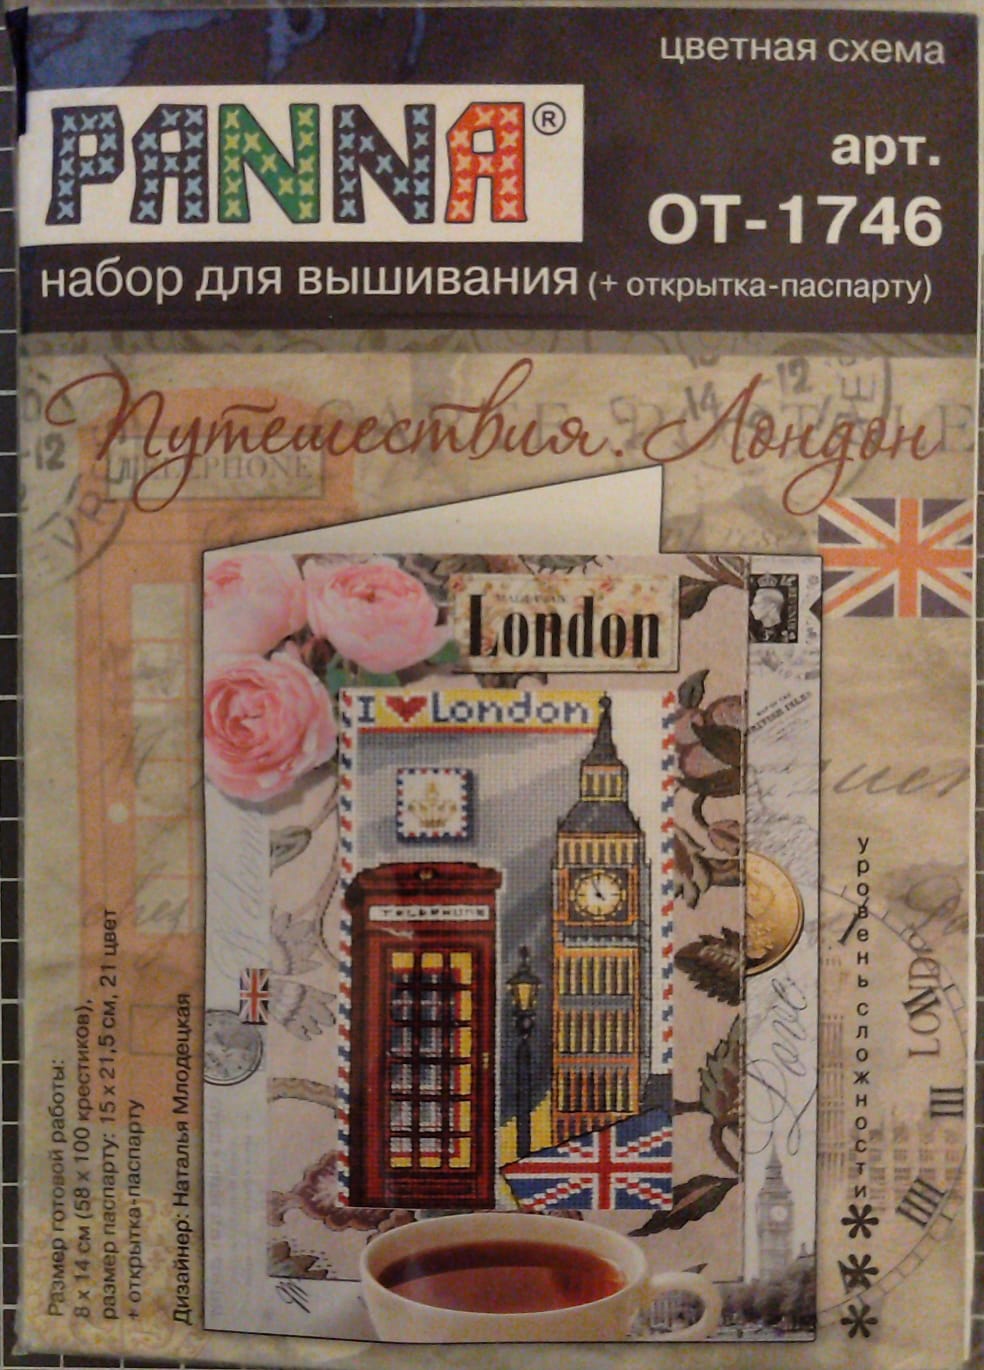 Путешествия. Лондон  Набор для вышивания (+ открытка-паспарту)